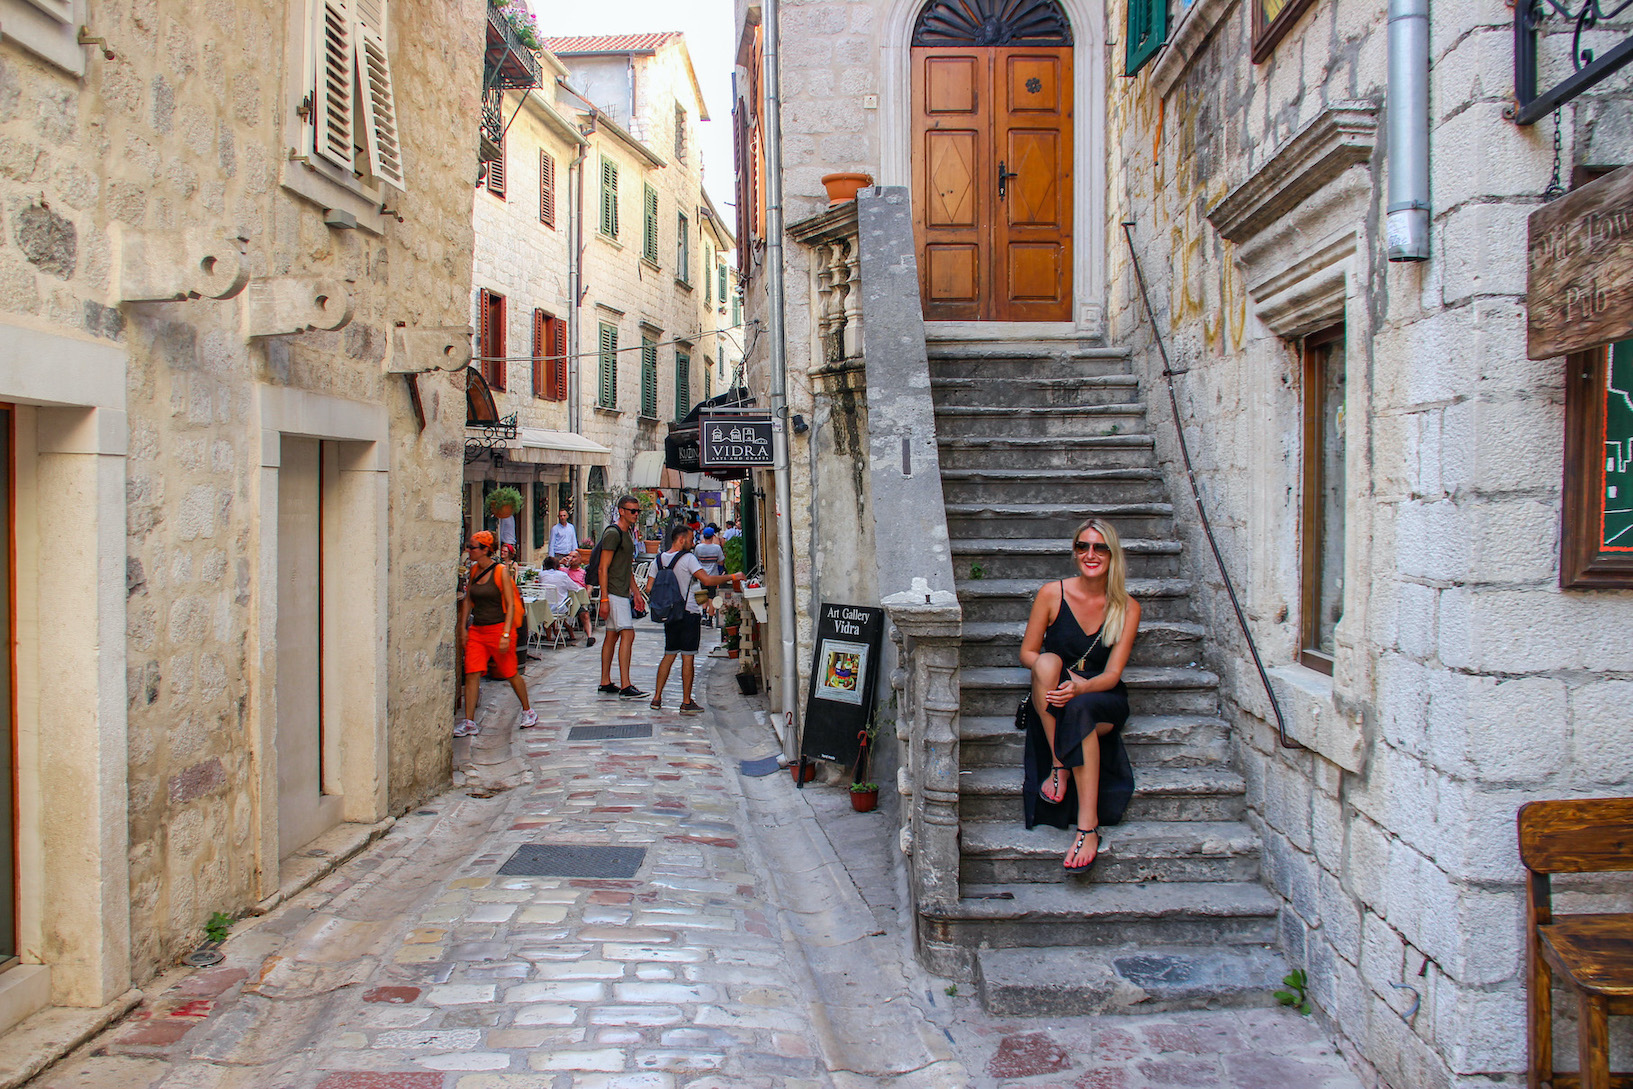 Reisebericht Montenegro und Dubrovnik